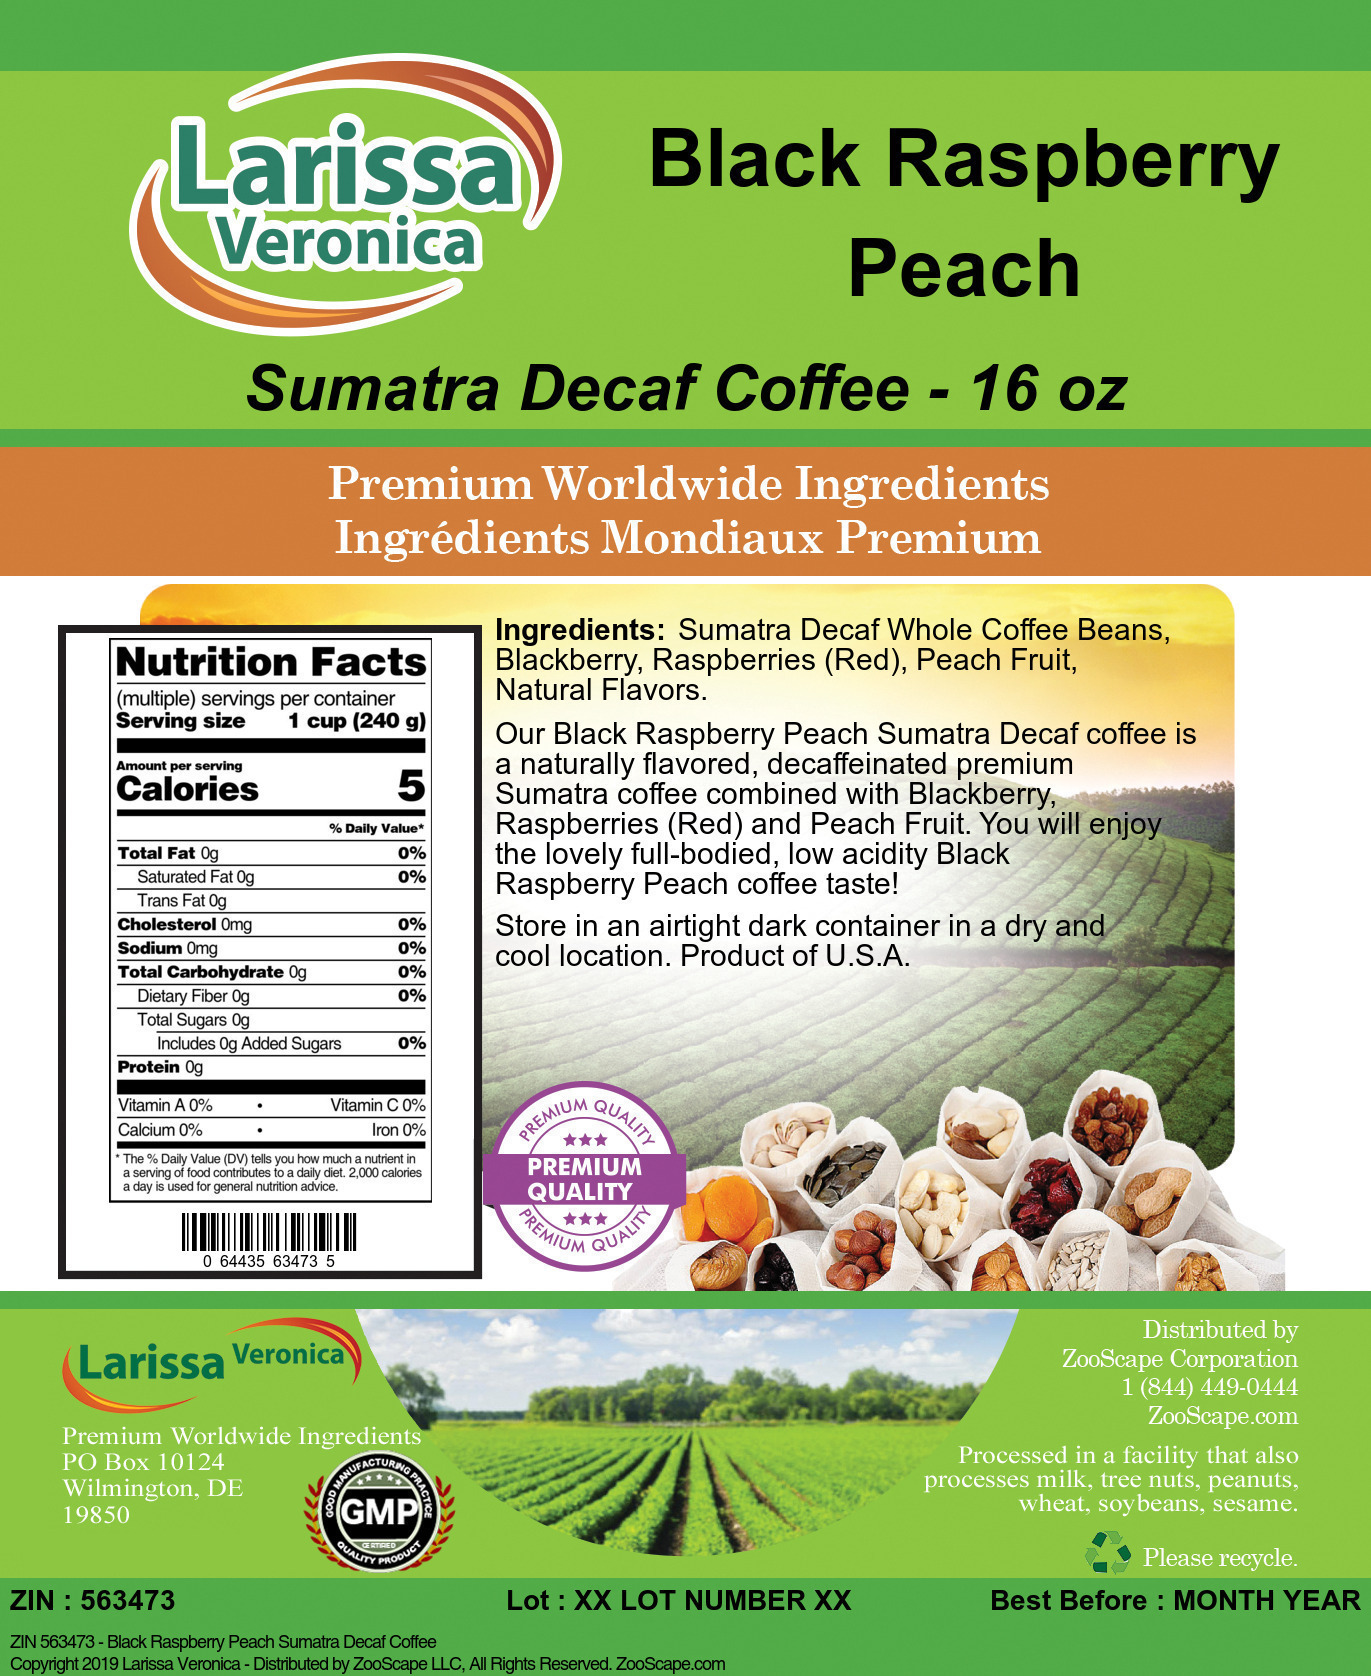 Black Raspberry Peach Sumatra Decaf Coffee - Label